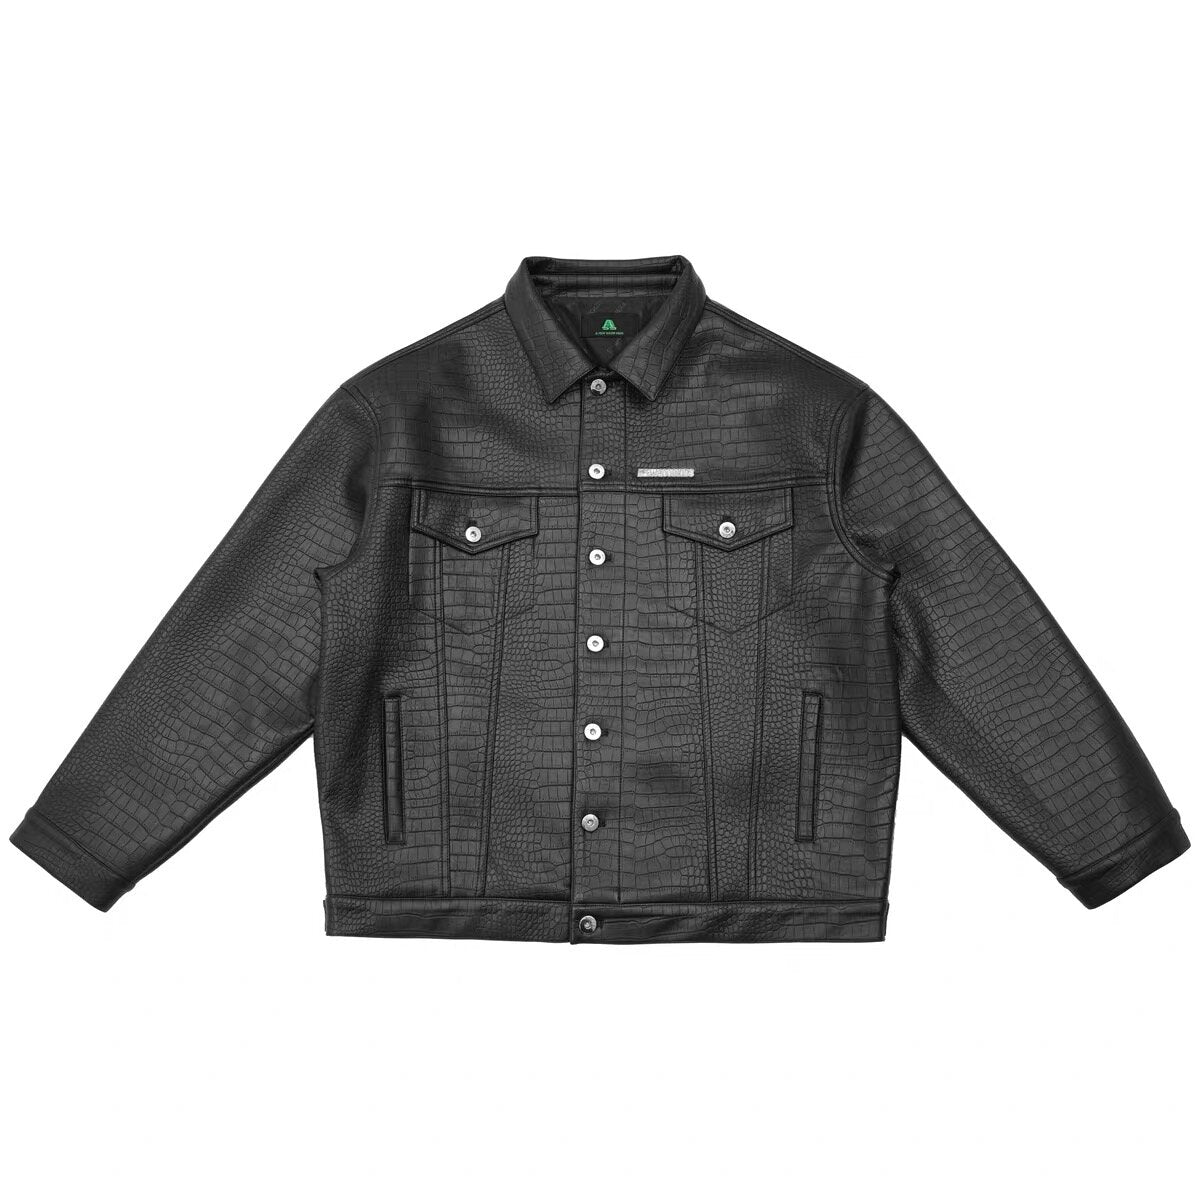 DONCARE (AFGK) "Crocodile Effect Leather Jacket" - Black